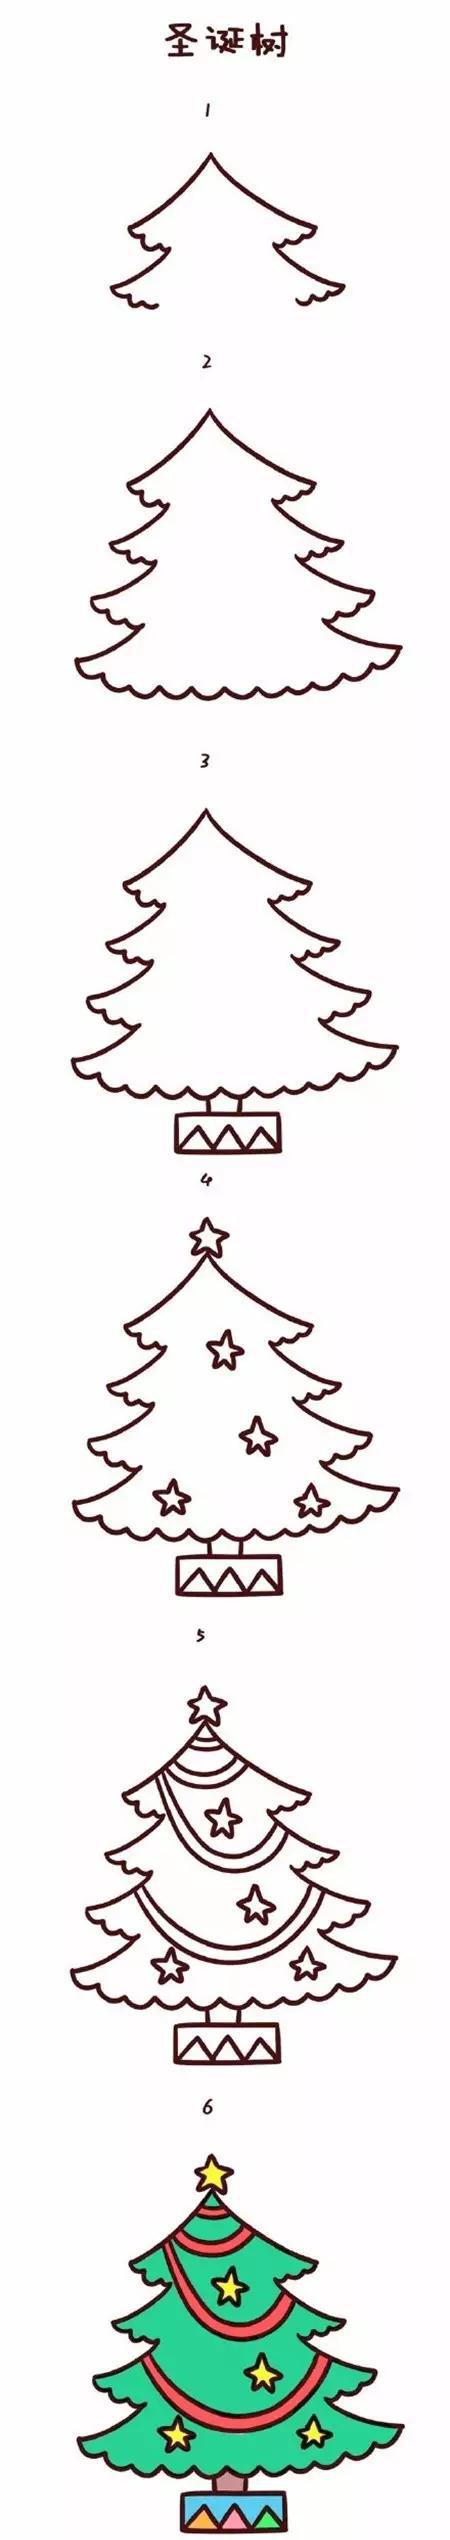 圣诞节简笔画图片大全 简单又可爱的圣诞节简笔画(5)